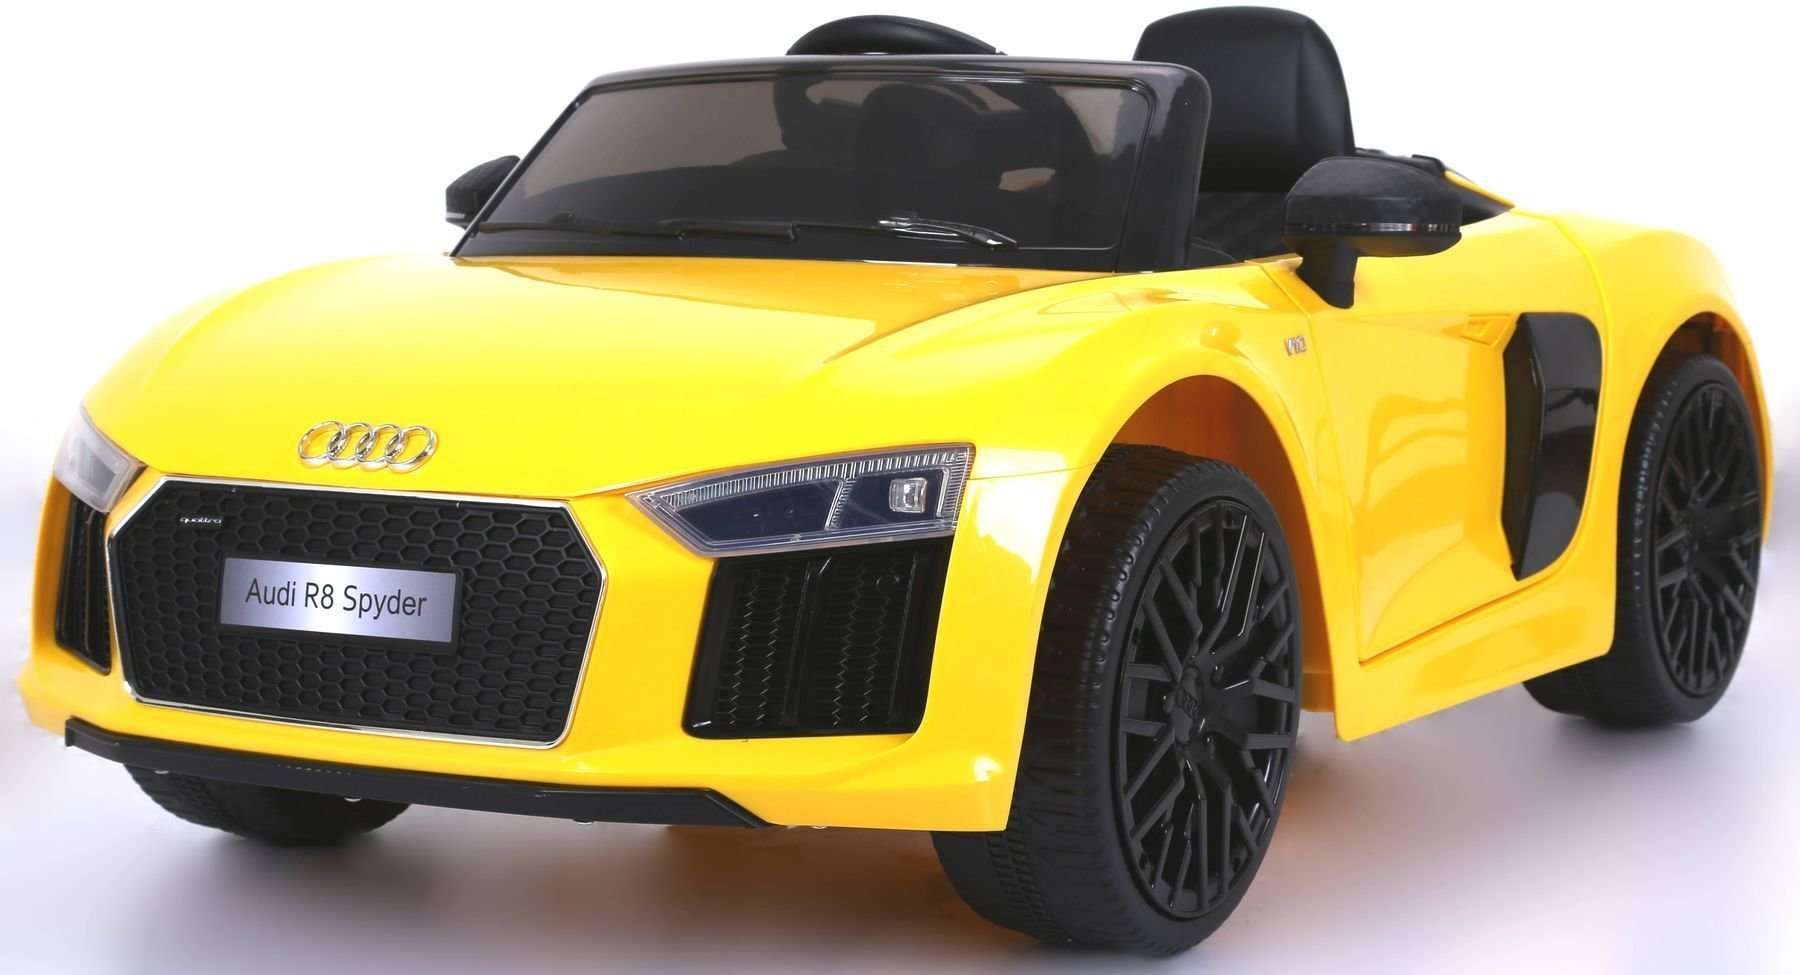 Voiture électrique jouet Beneo Electric Ride-On Car Audi R8 Spyder Yellow